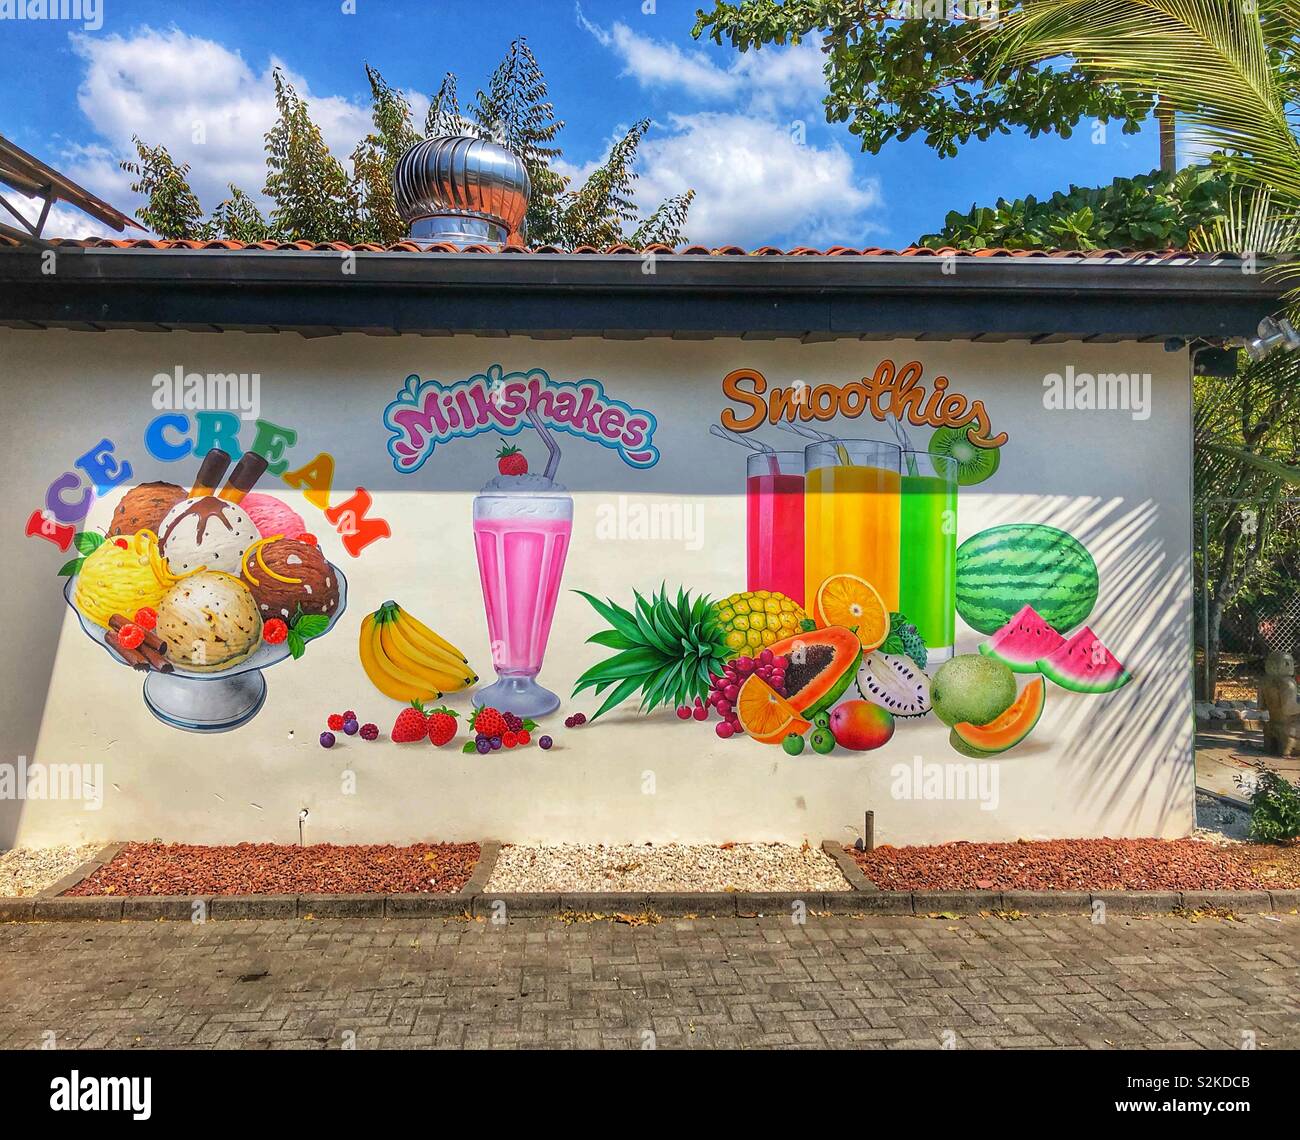 Brillante y colorido mural sobre el lado de una tienda de helados. Foto de stock